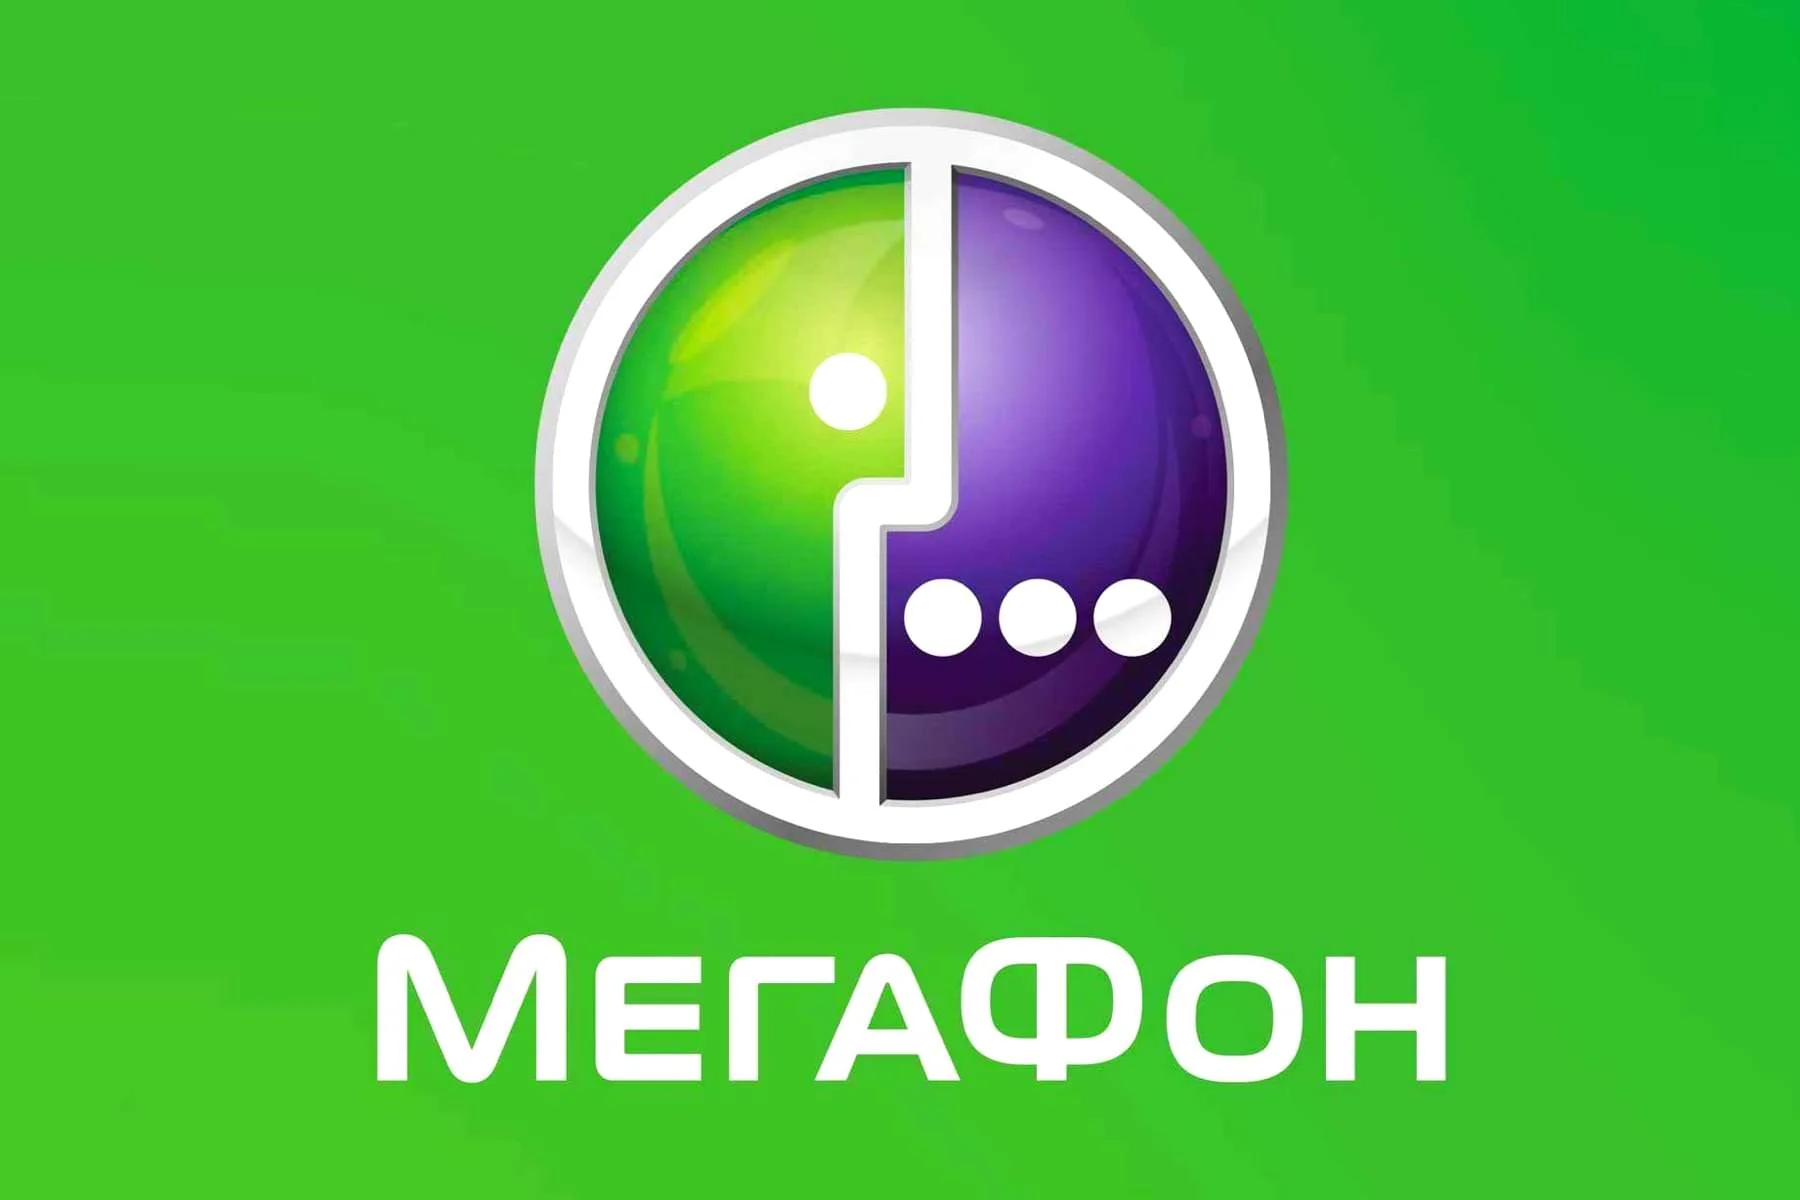 Получайте выгоду с промокодами Megafon на сайте PROMOKODI